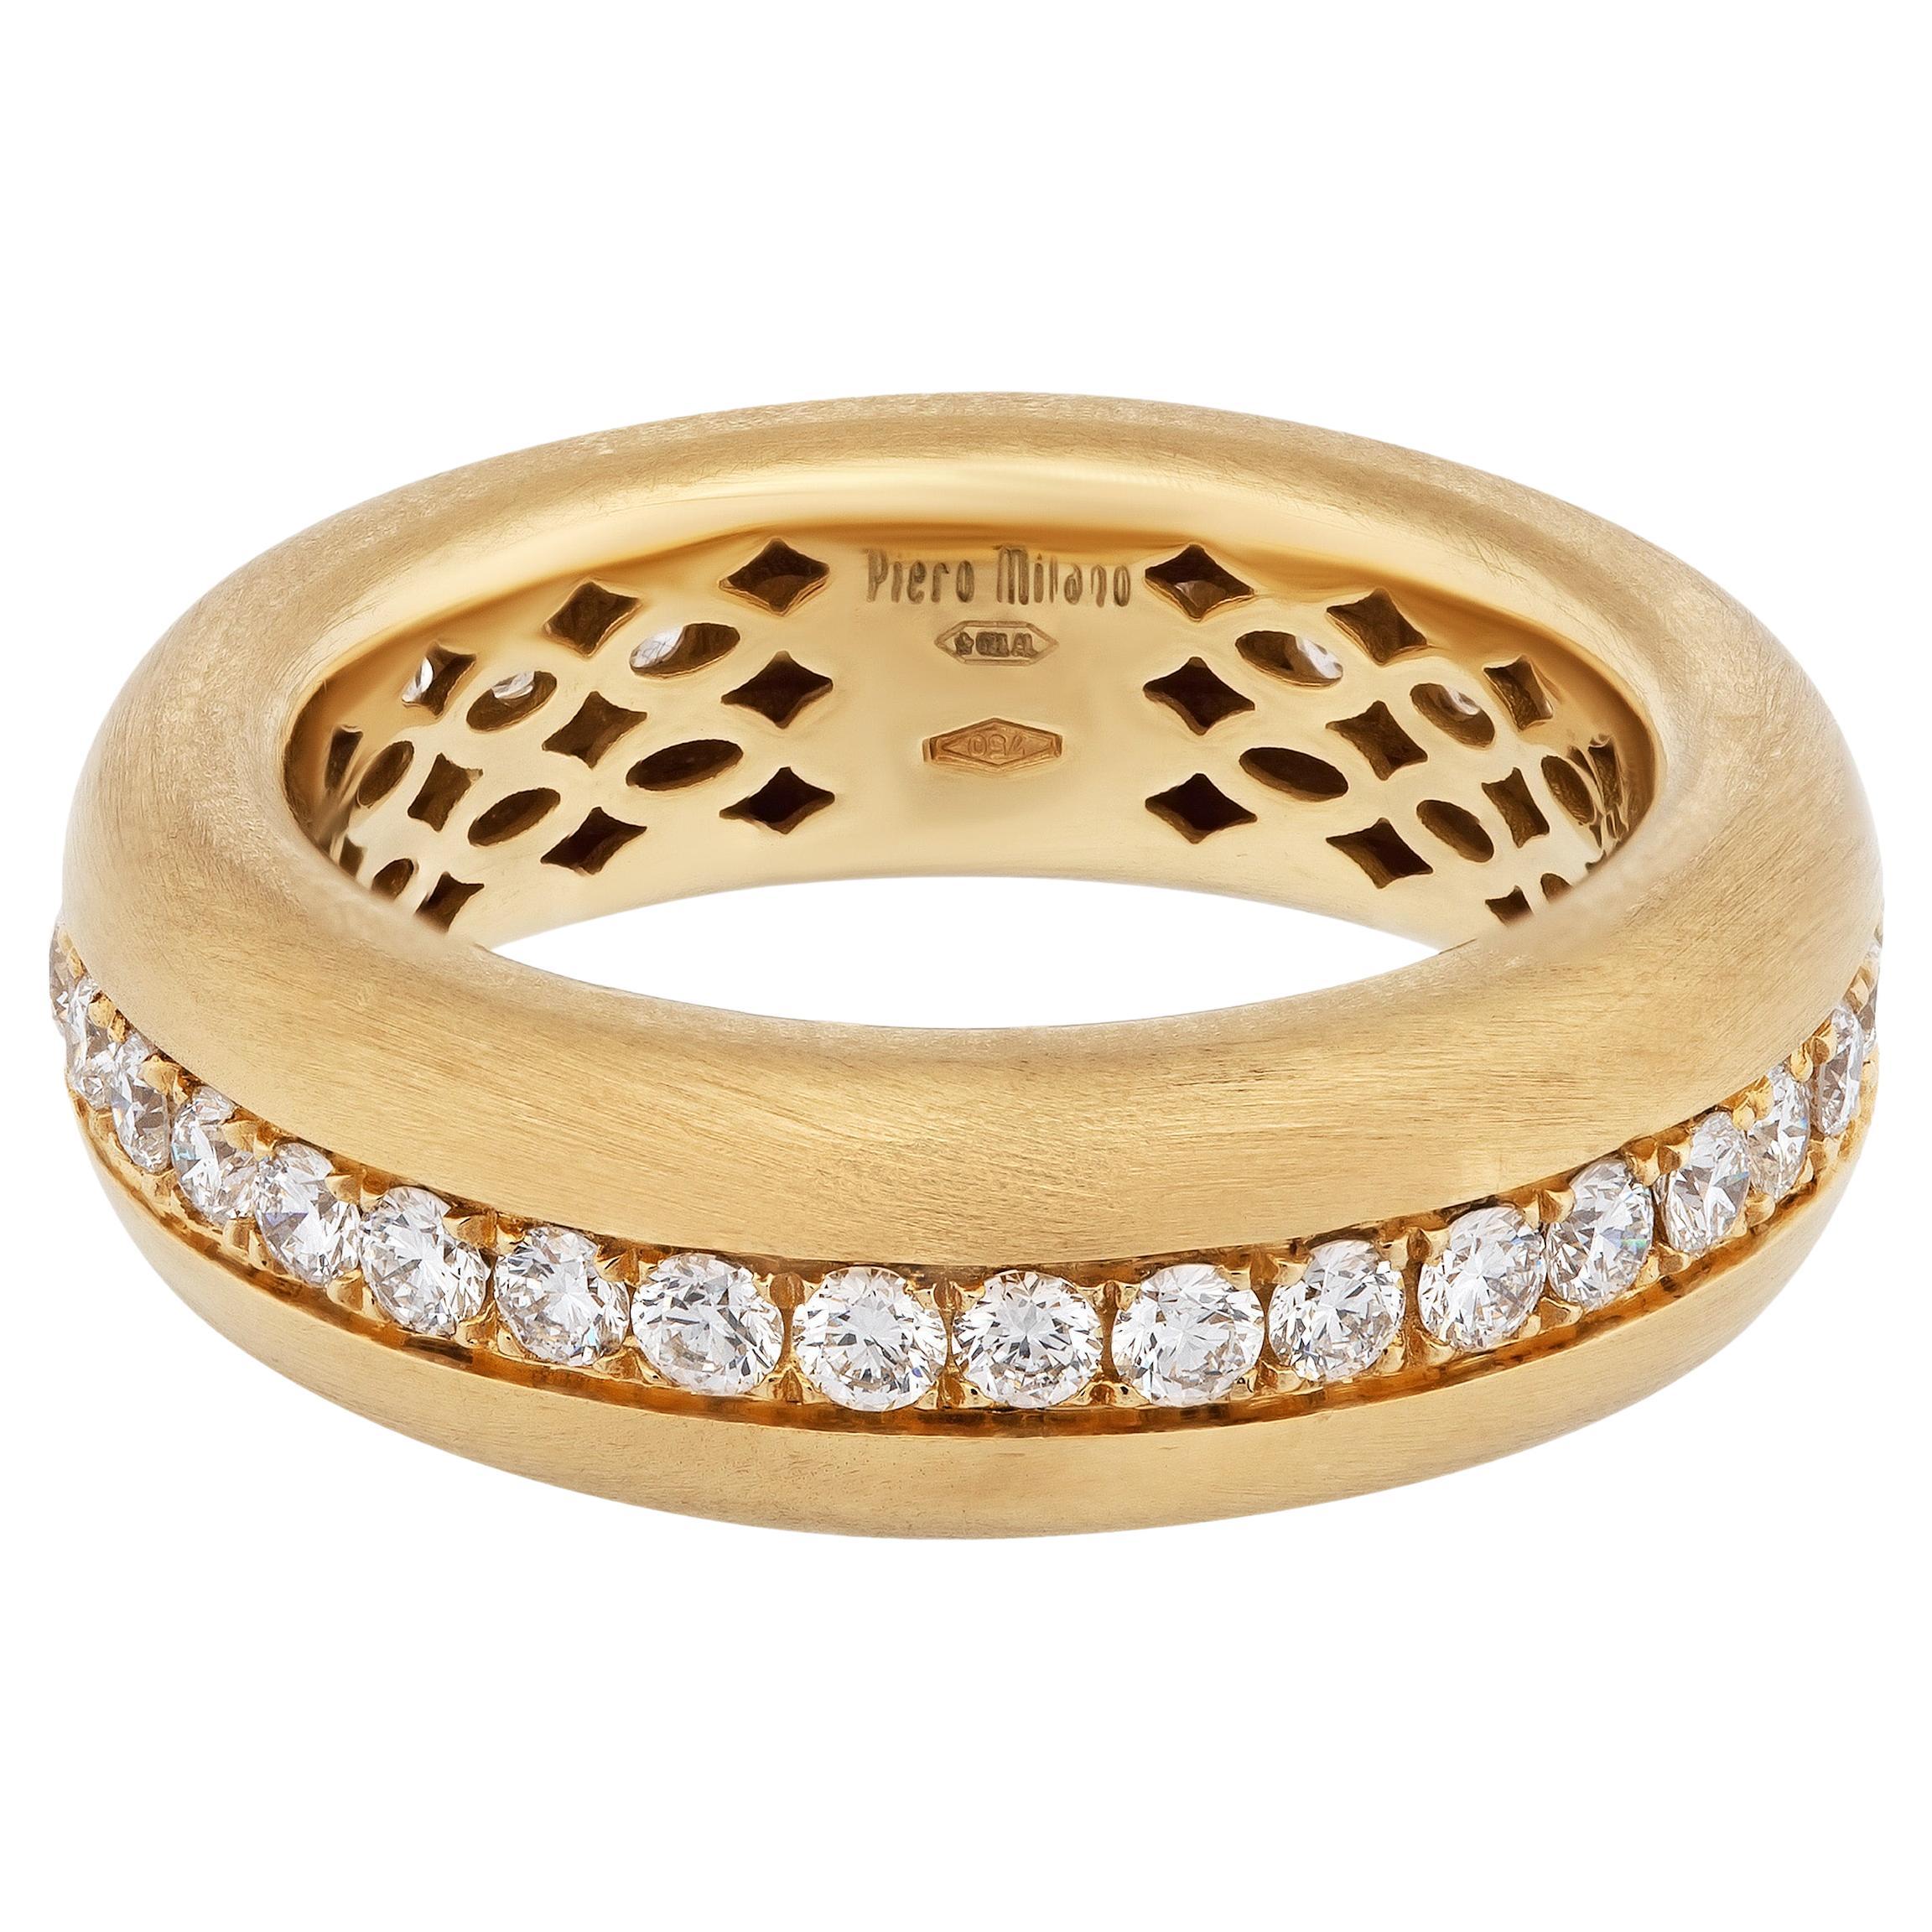 La bague Piero Milano en or jaune 18 carats avec diamants, taille 6,75